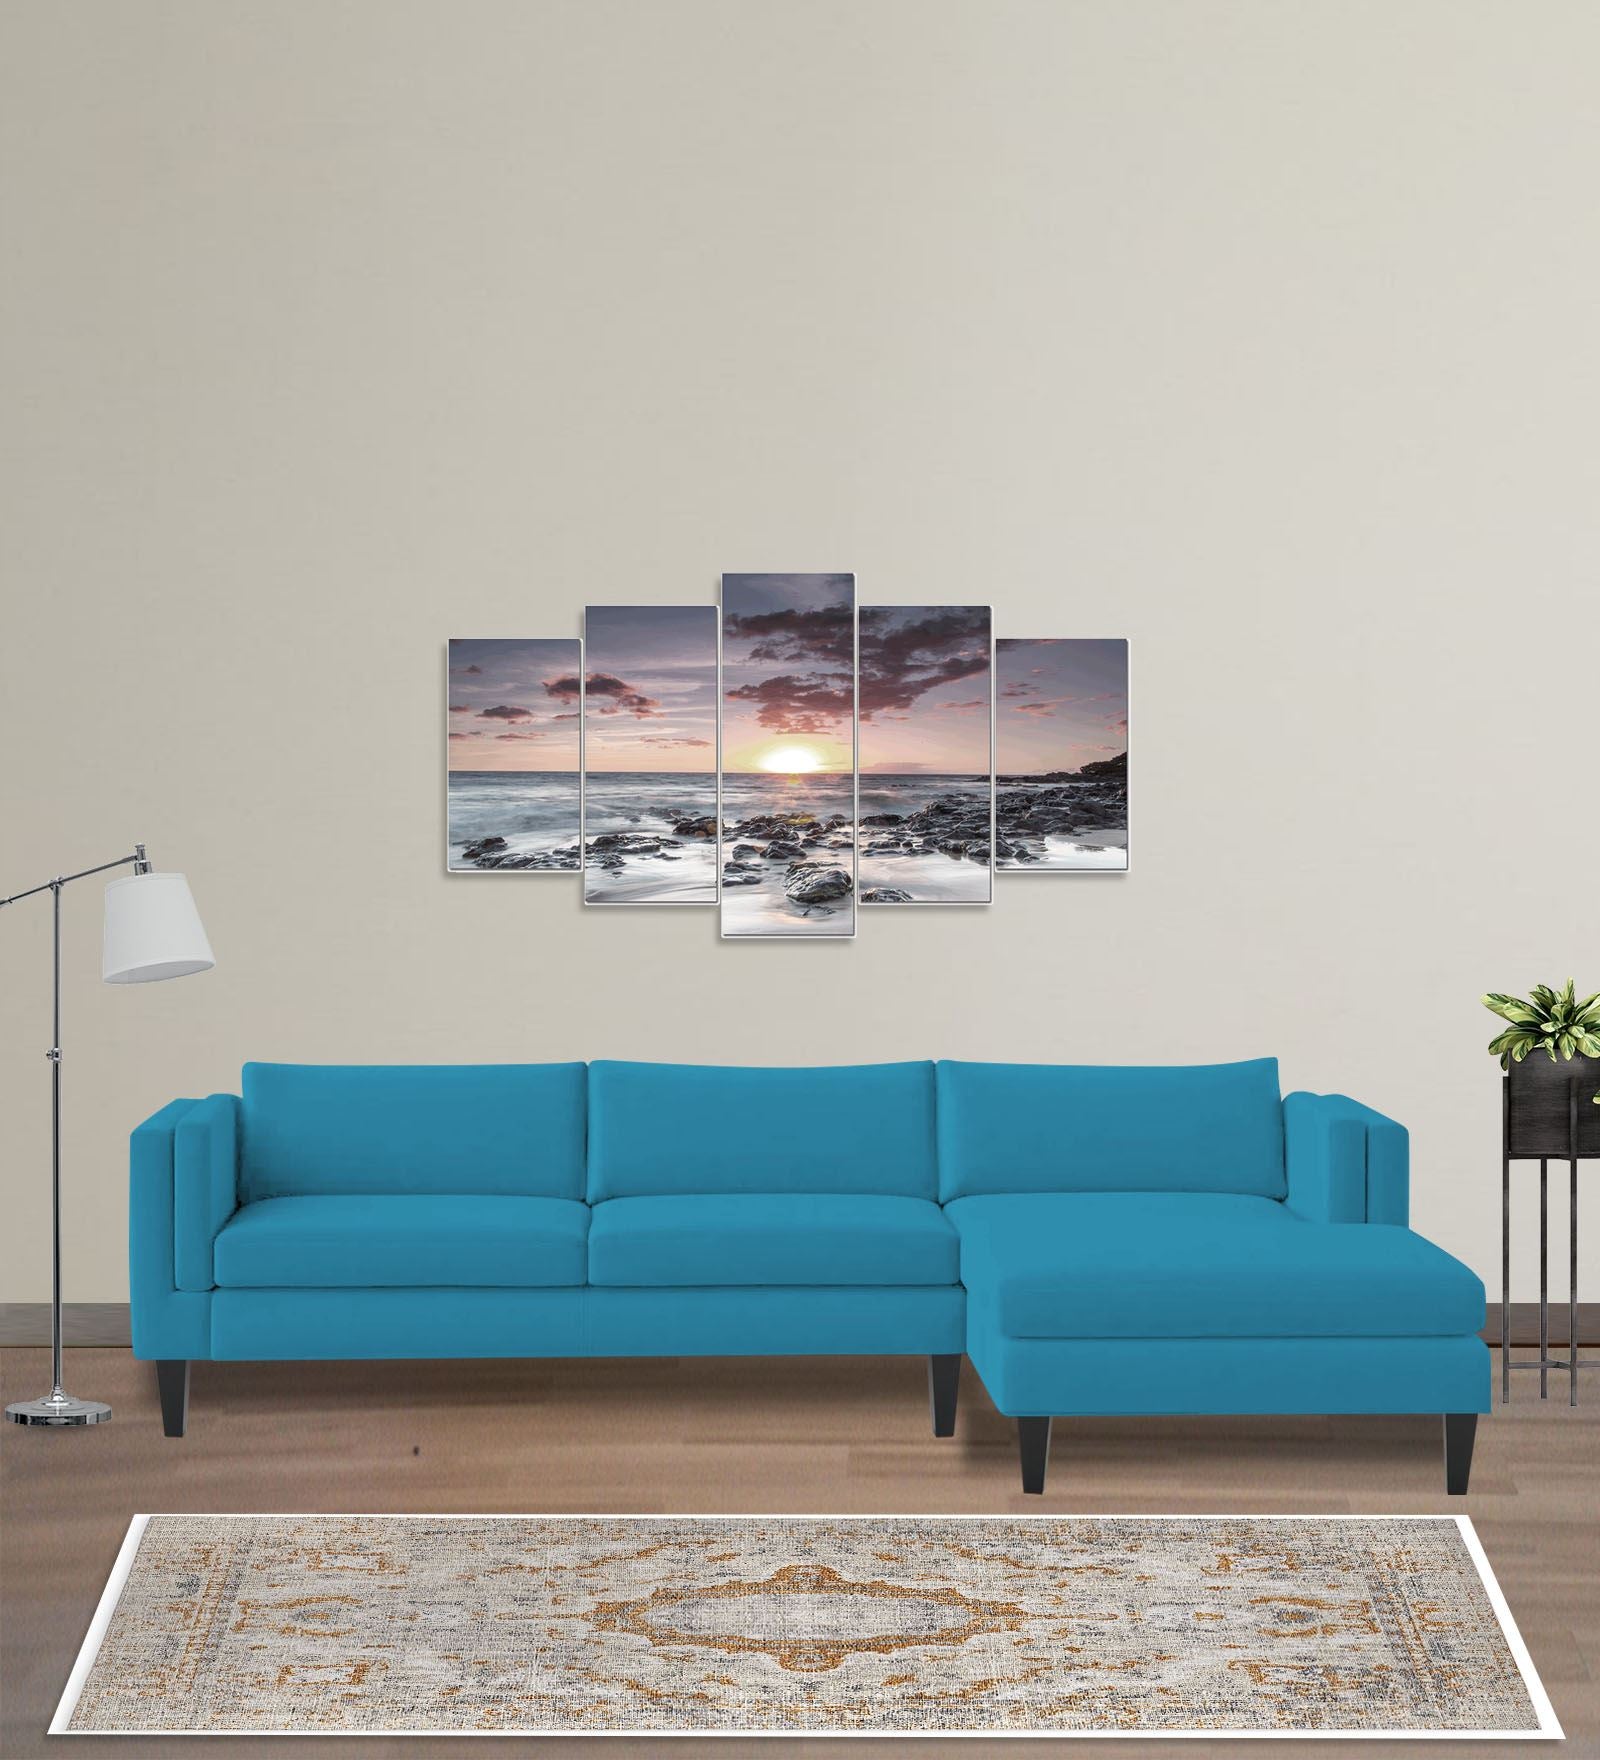 Jasper Velvet LHS Sectional Sofa (3+Lounger) in Aqua blue Colour